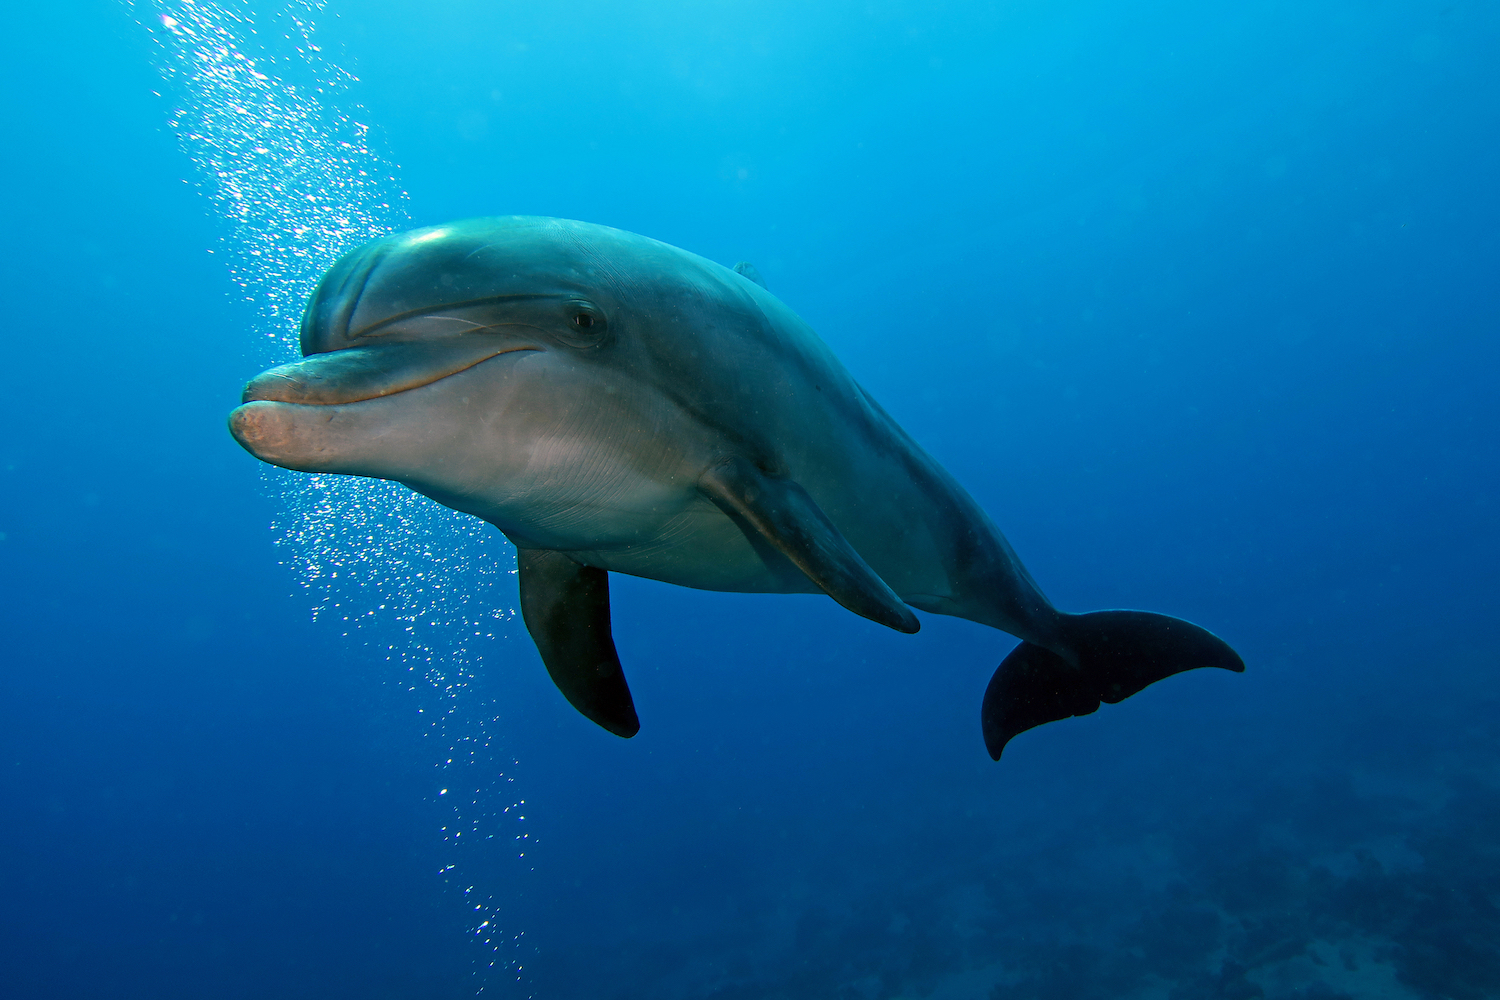 Danni dolphin